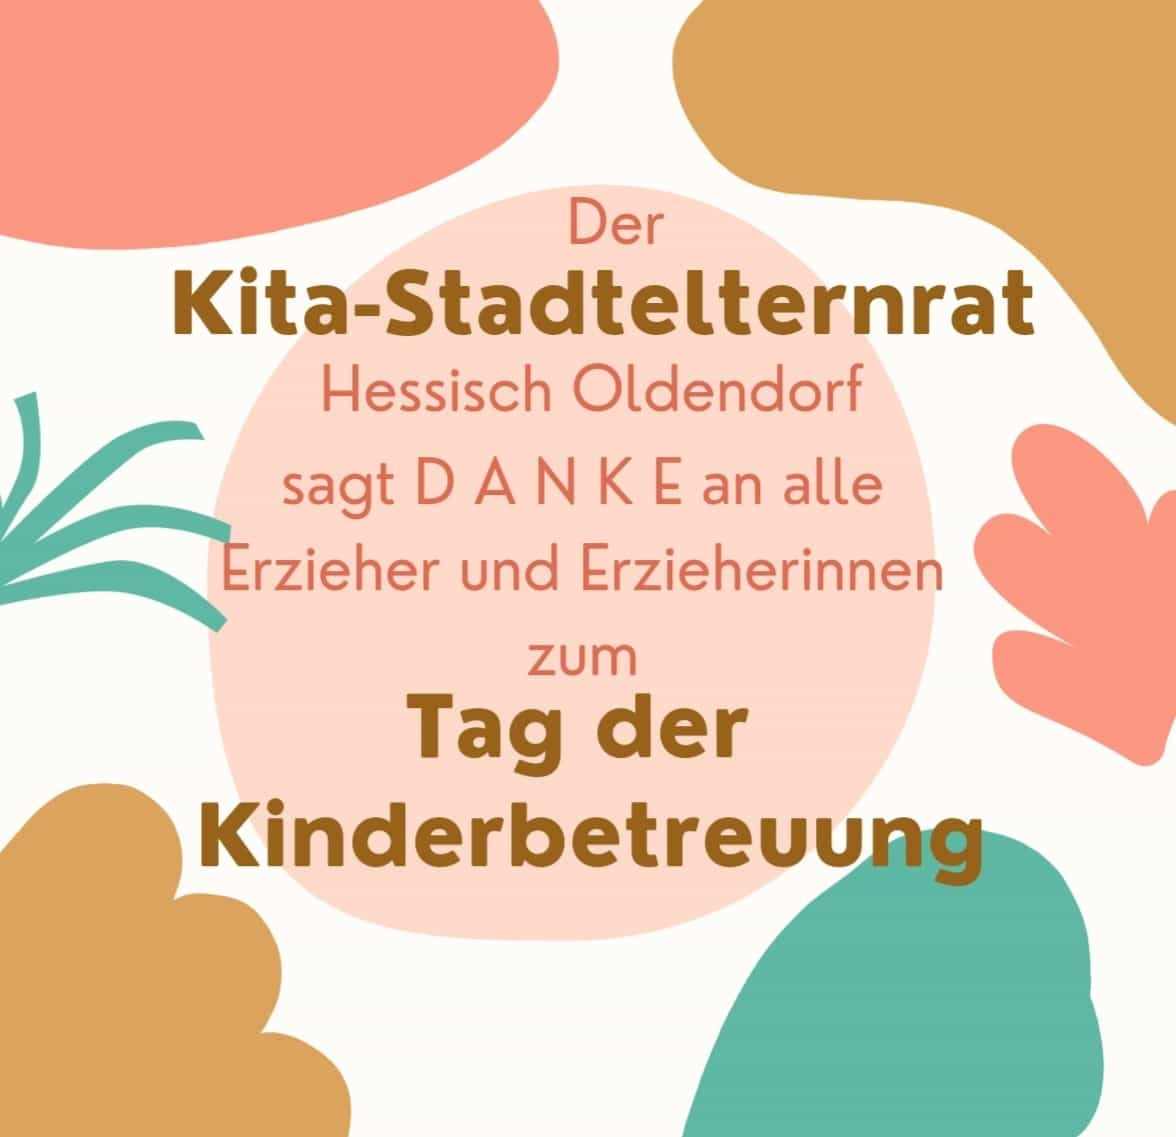 Der Kira-Stadtelternrat Hessisch Oldendorf sagt Danke an aller Erzieher und Erzieherinnen